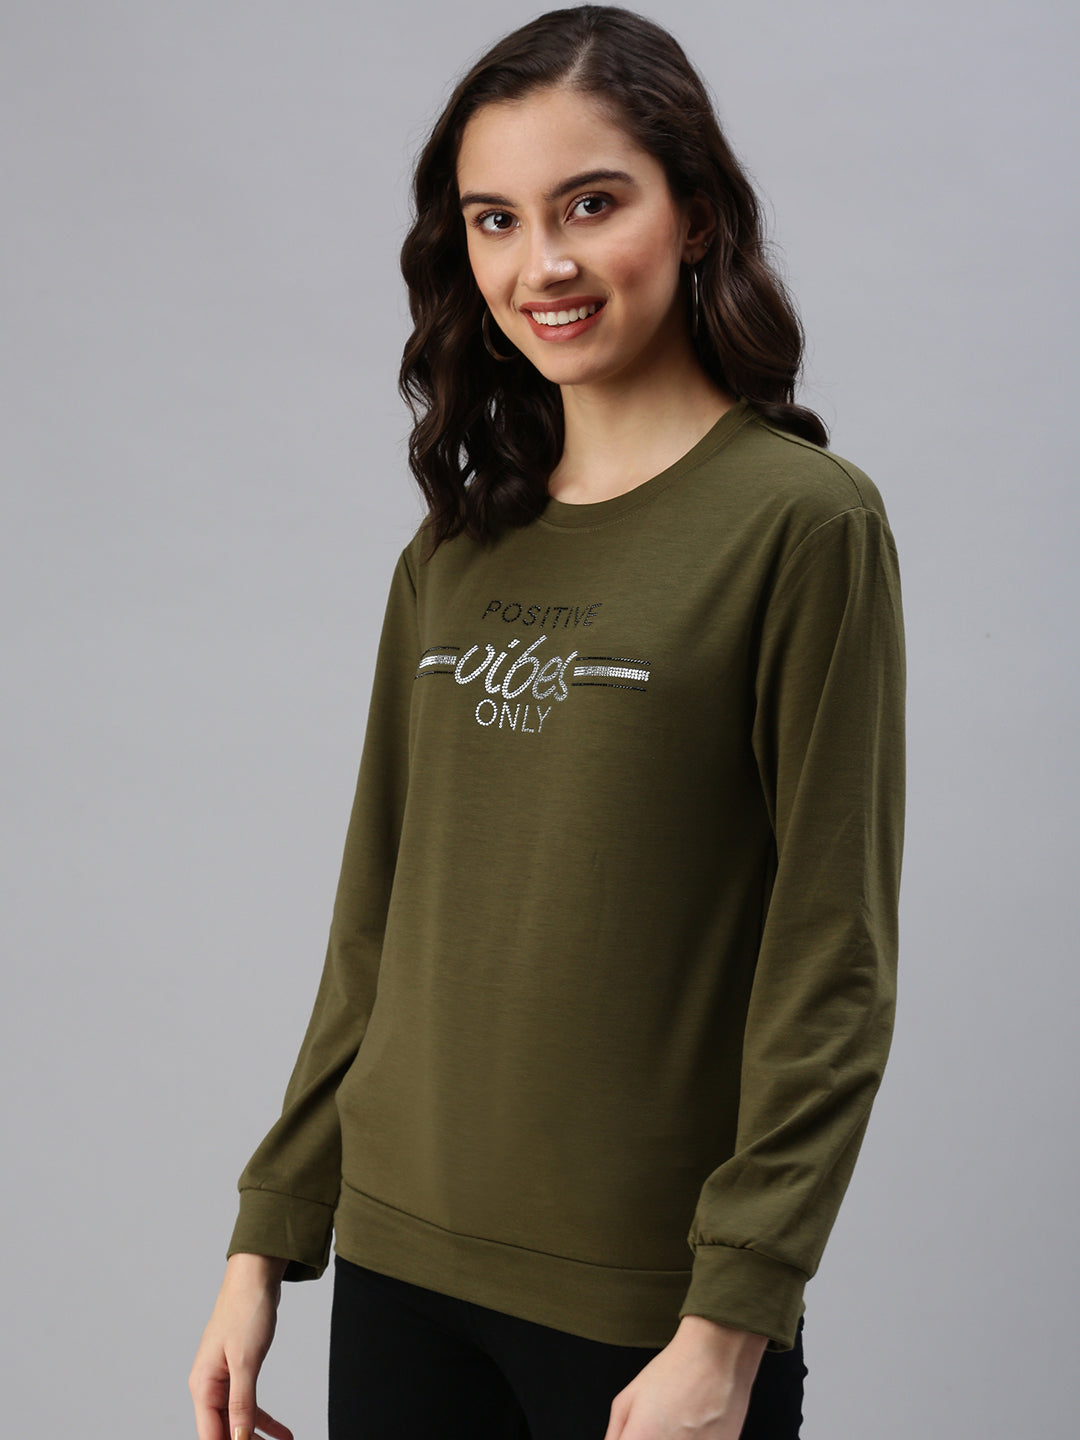 Women's Green Solid SweatShirt